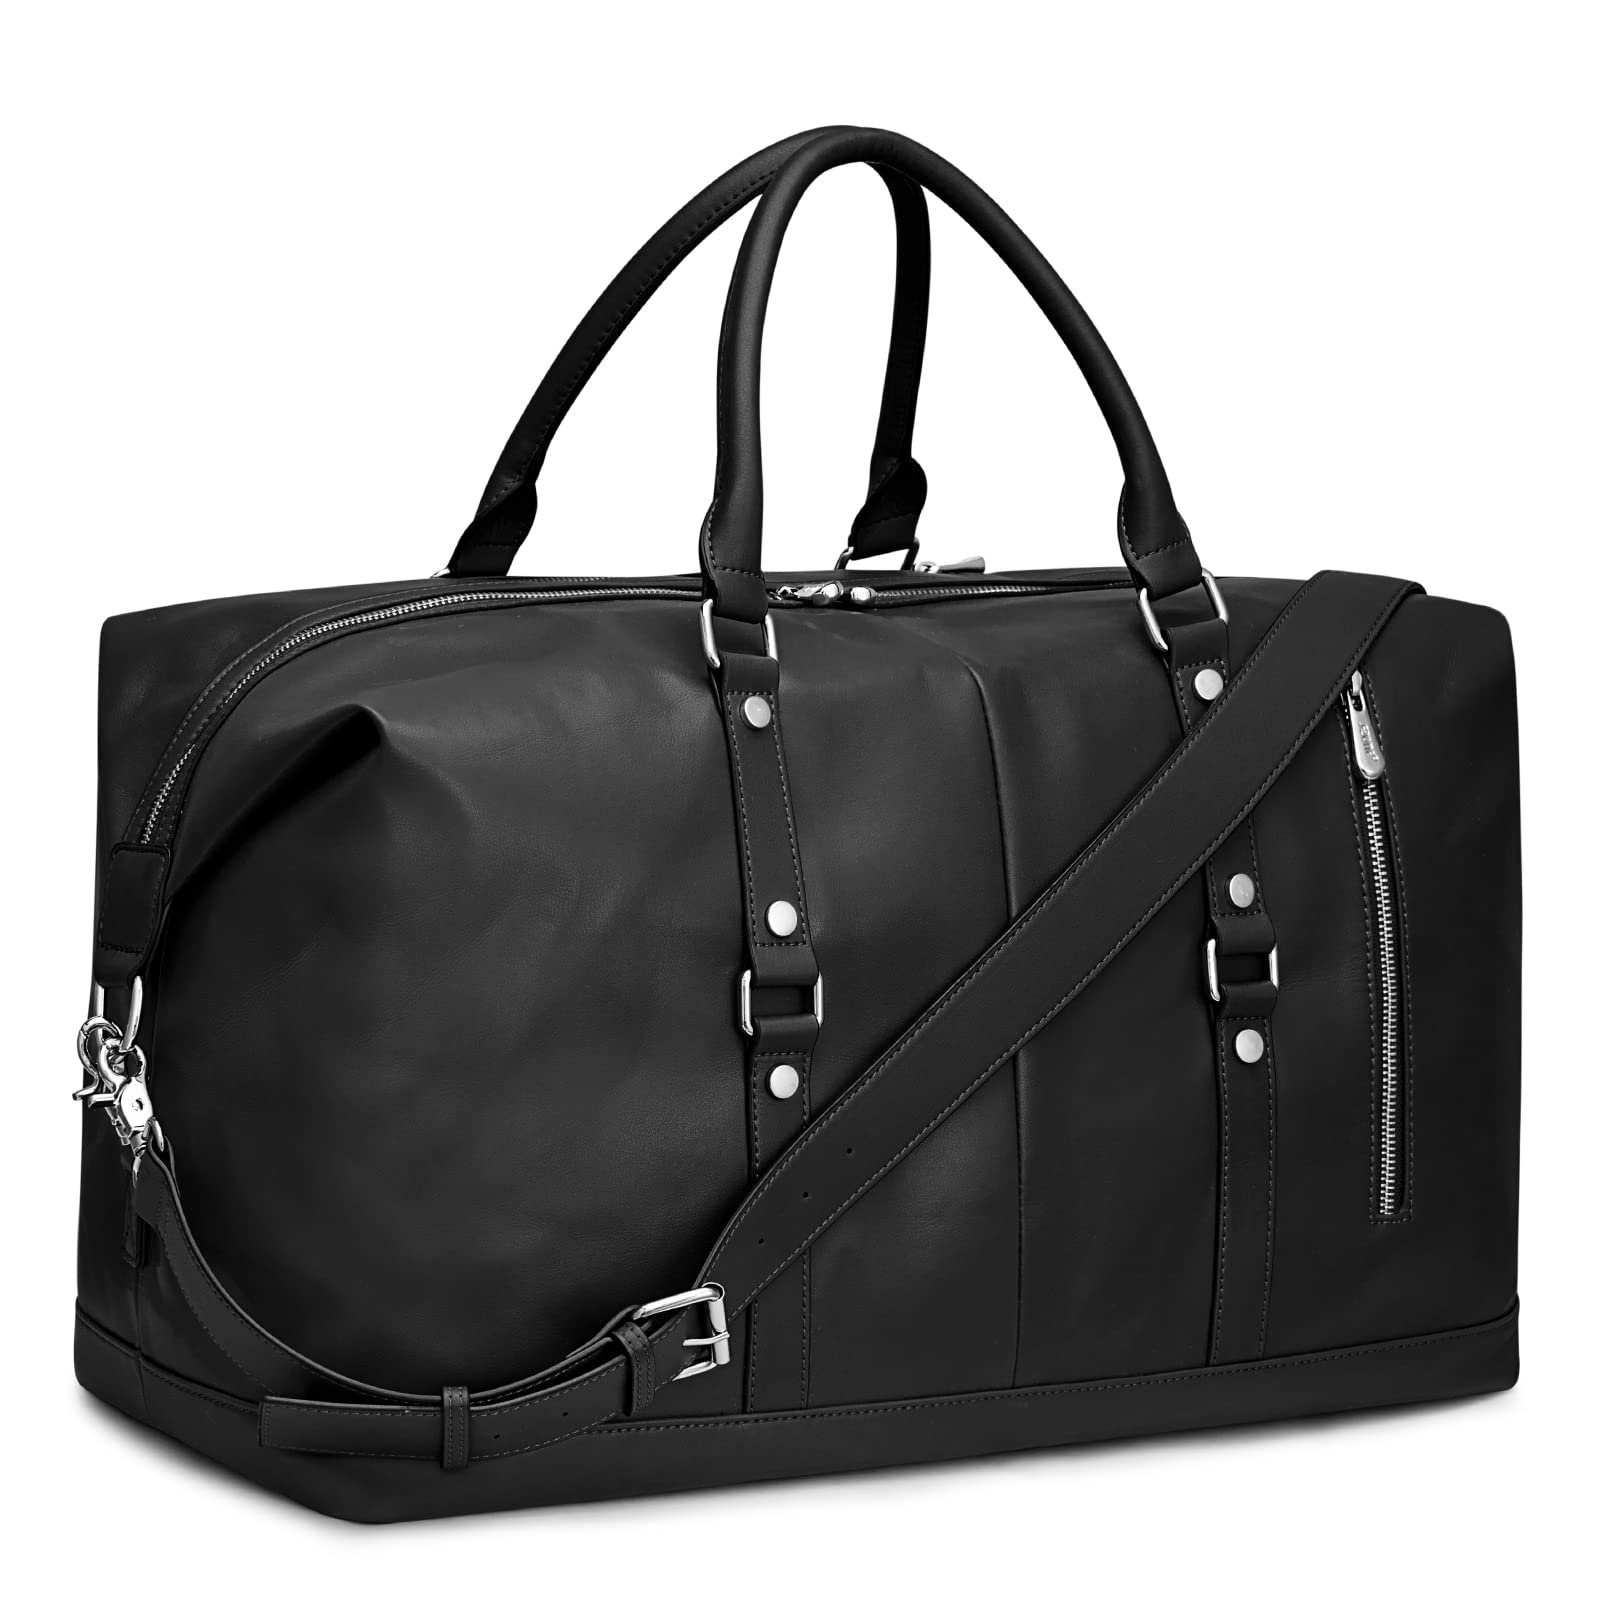 Damen Taschen Reisetaschen und Weekender Reisenthel Handtaschen in Schwarz 